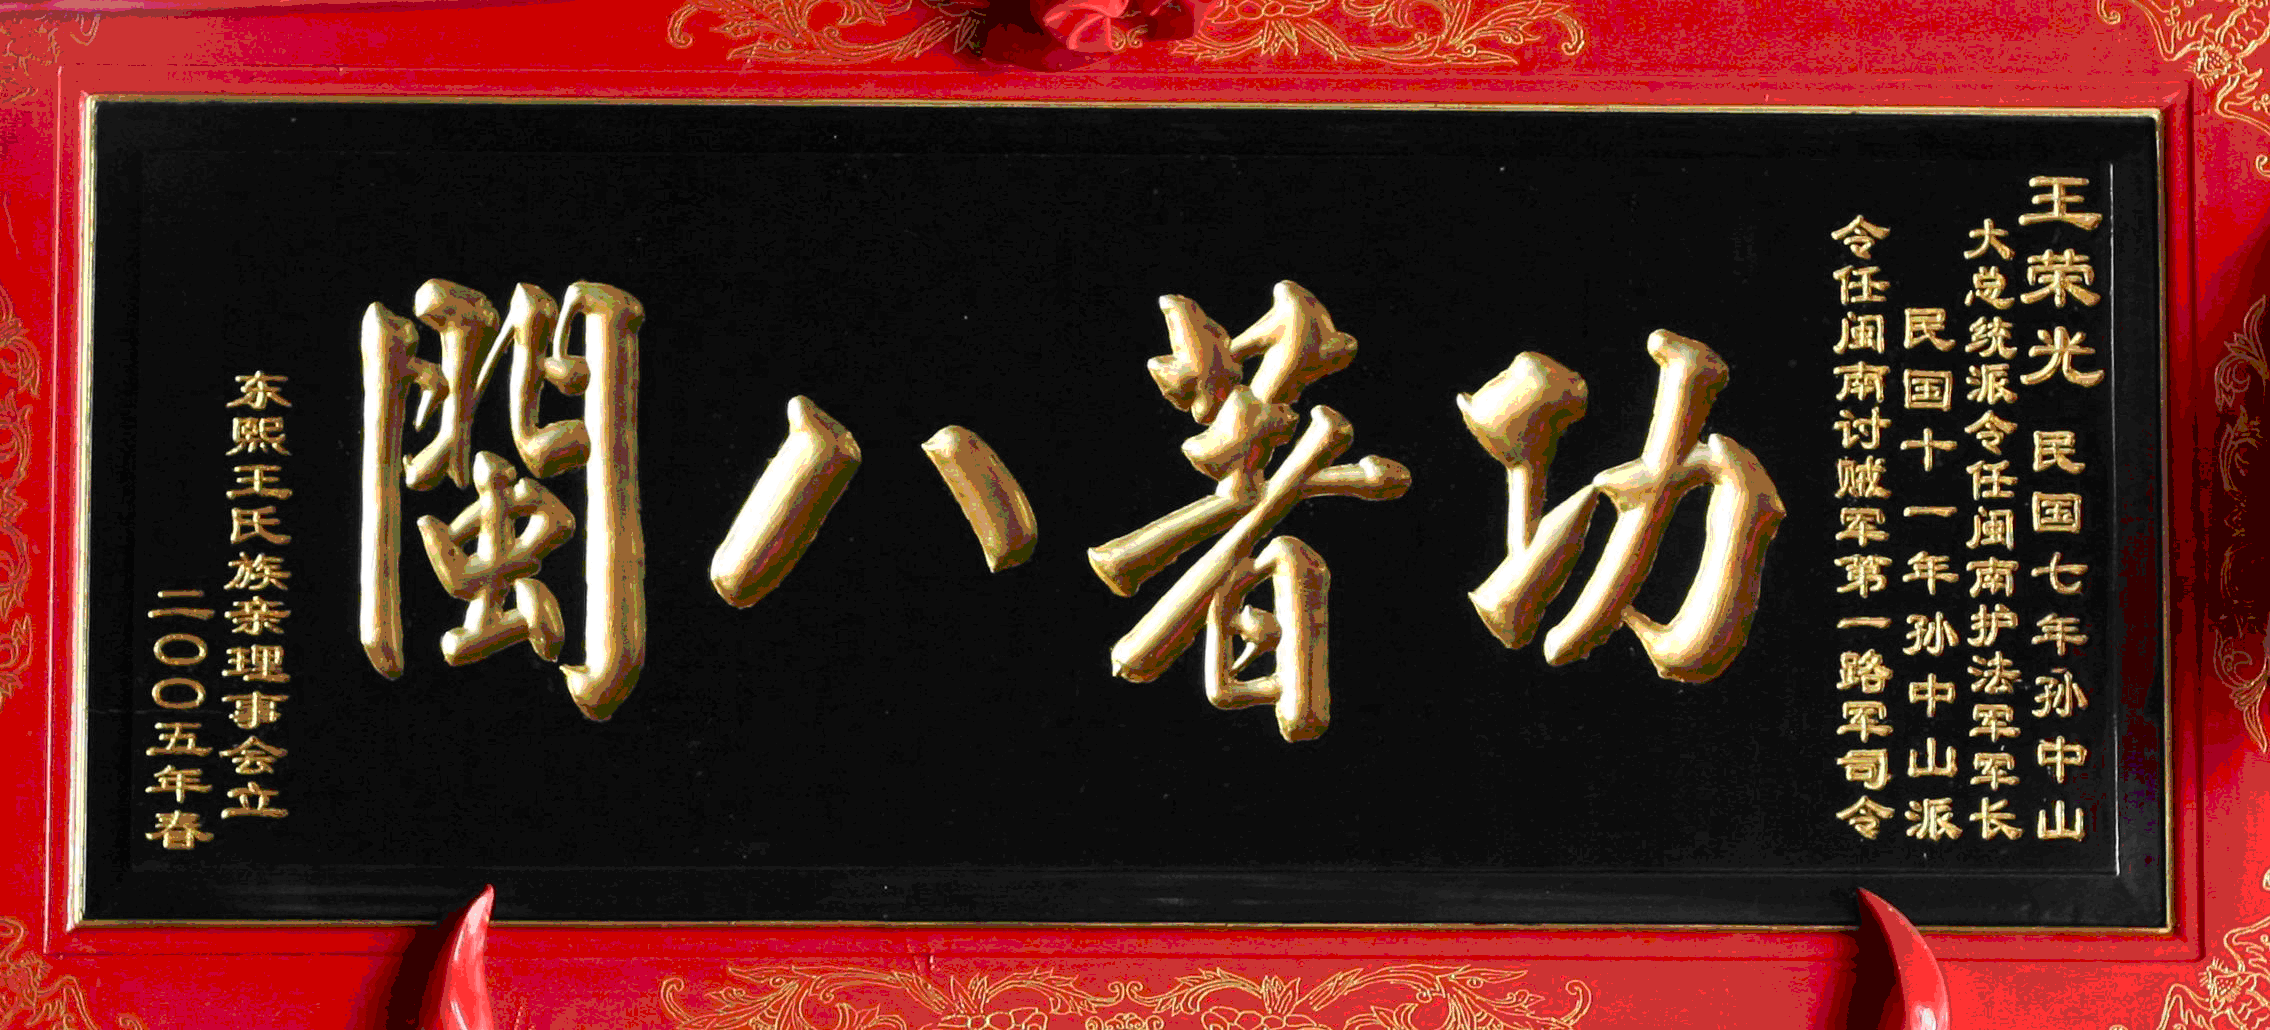 二零零五年東熙王氏族親理事會為王榮光立匾